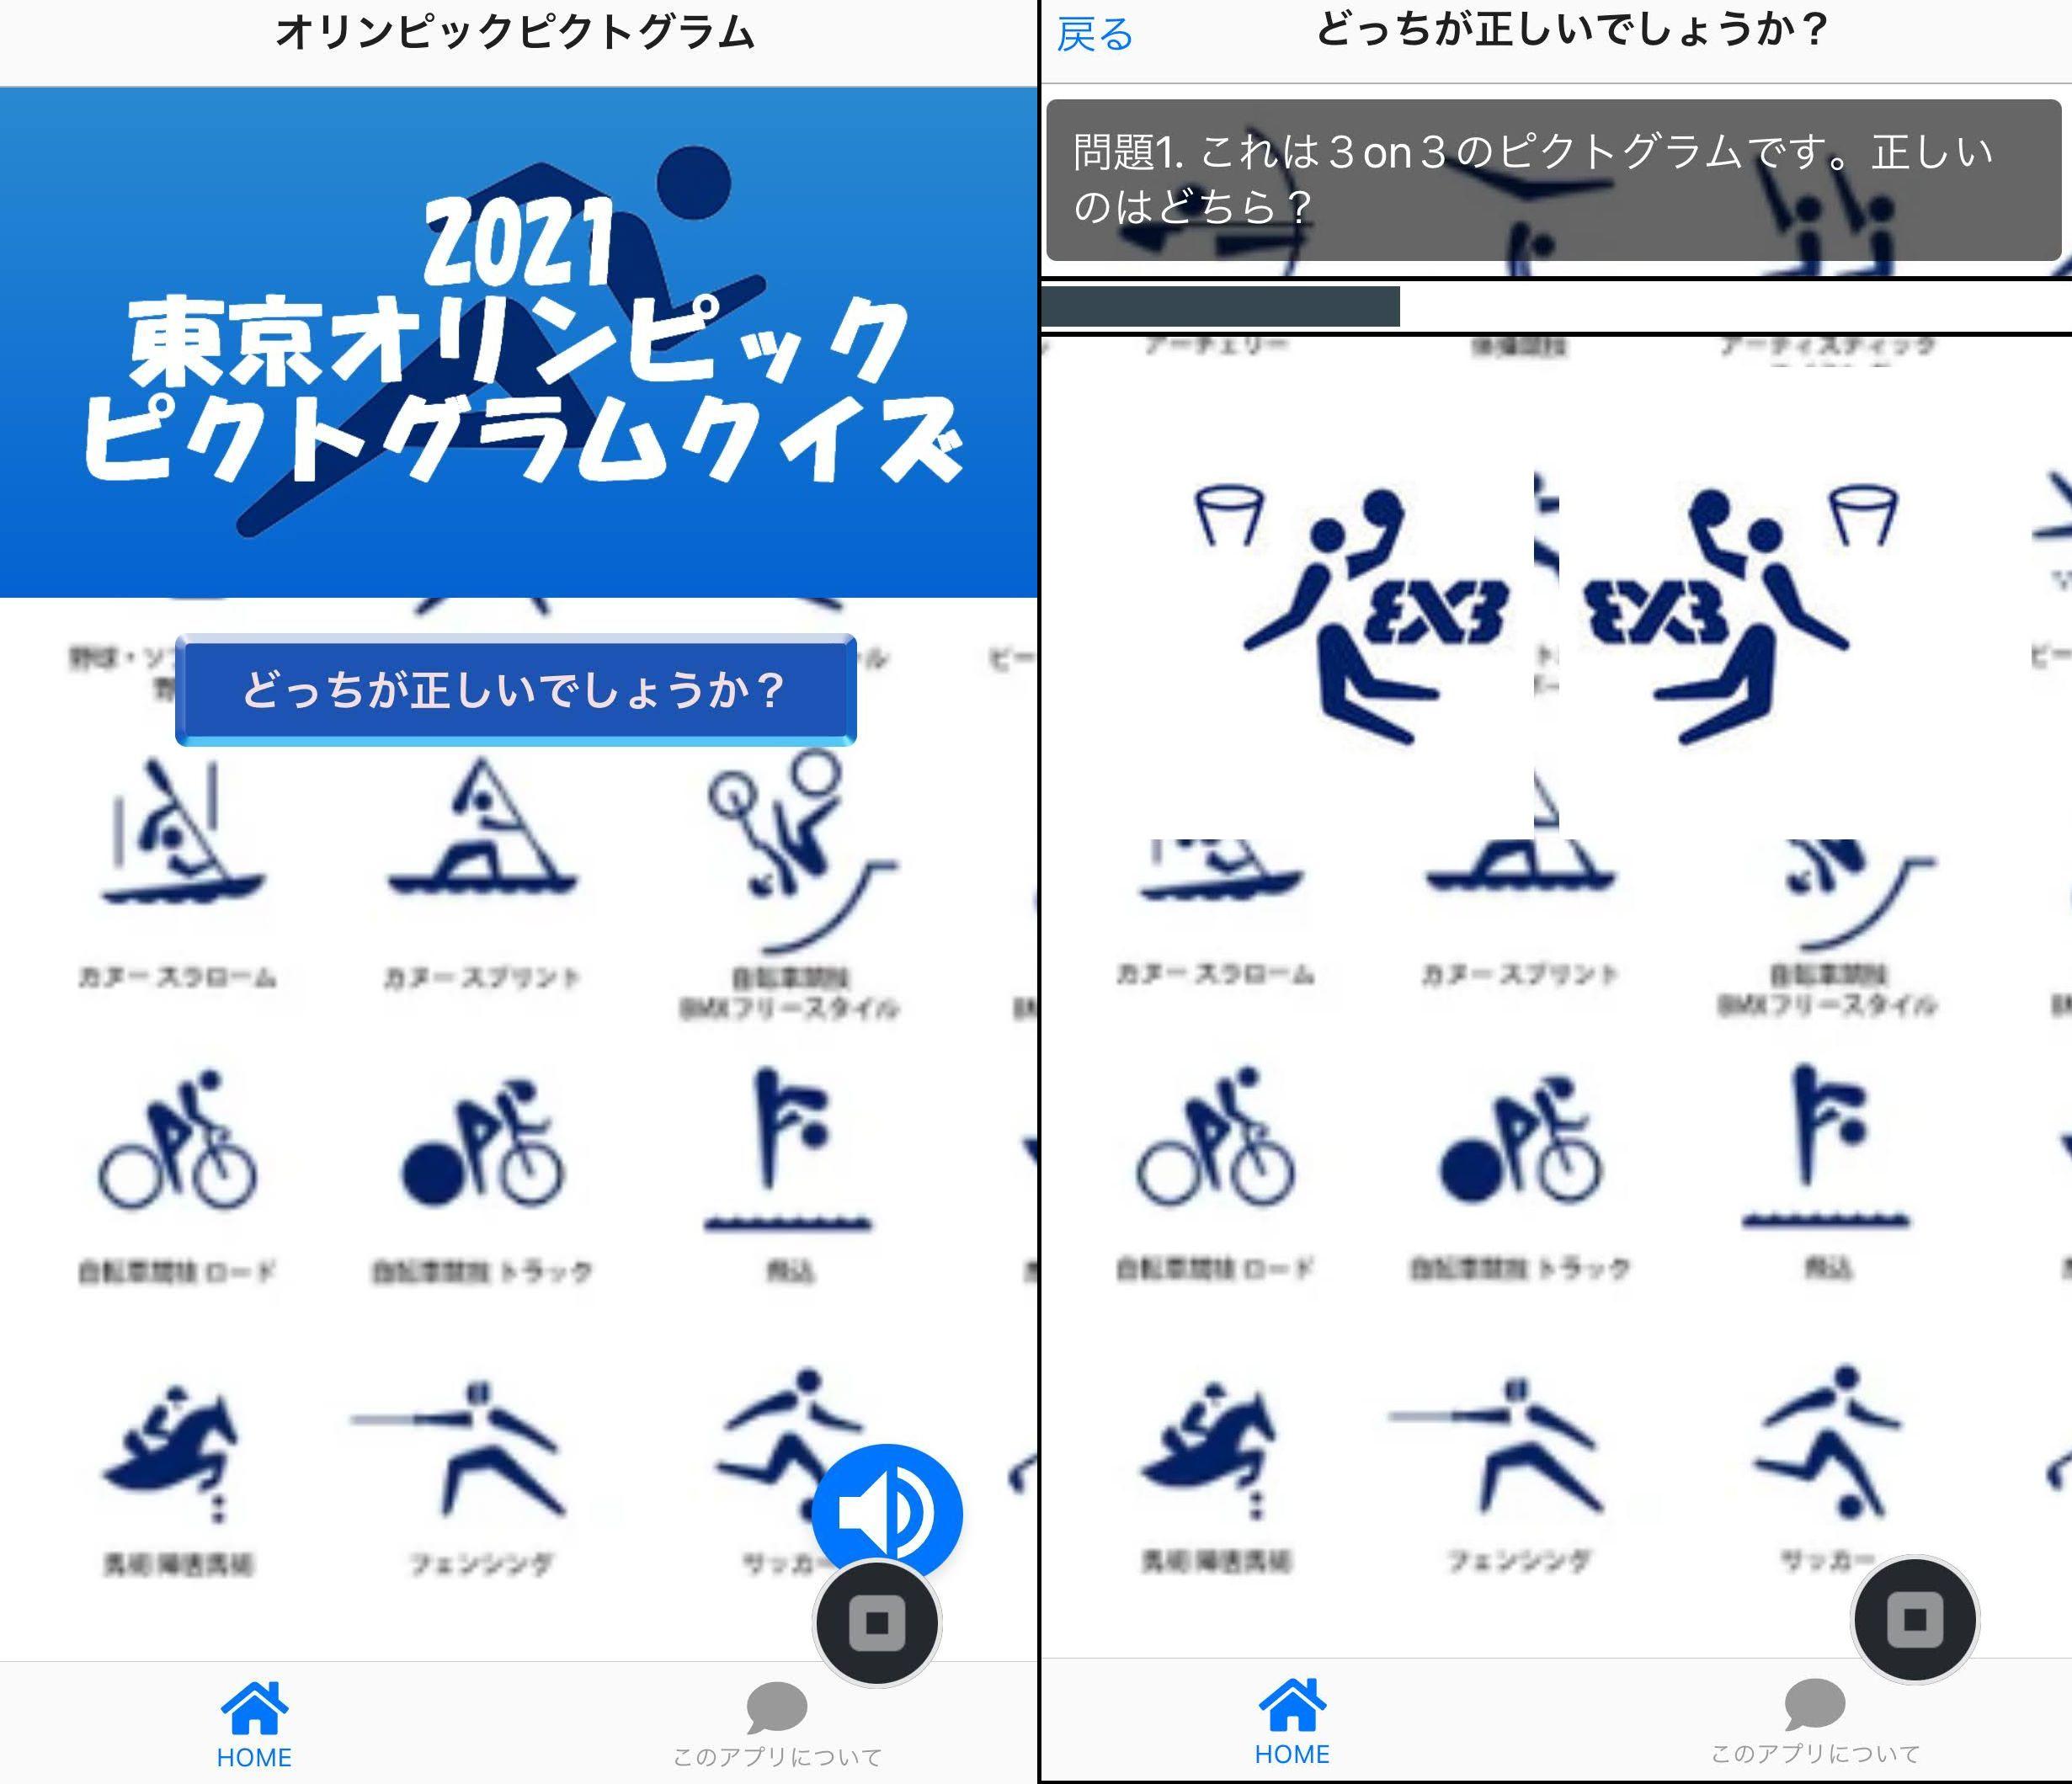 東京オリンピックpictogram ピクトグラム 左右対称反転画像クイズ Para Android Apk Baixar